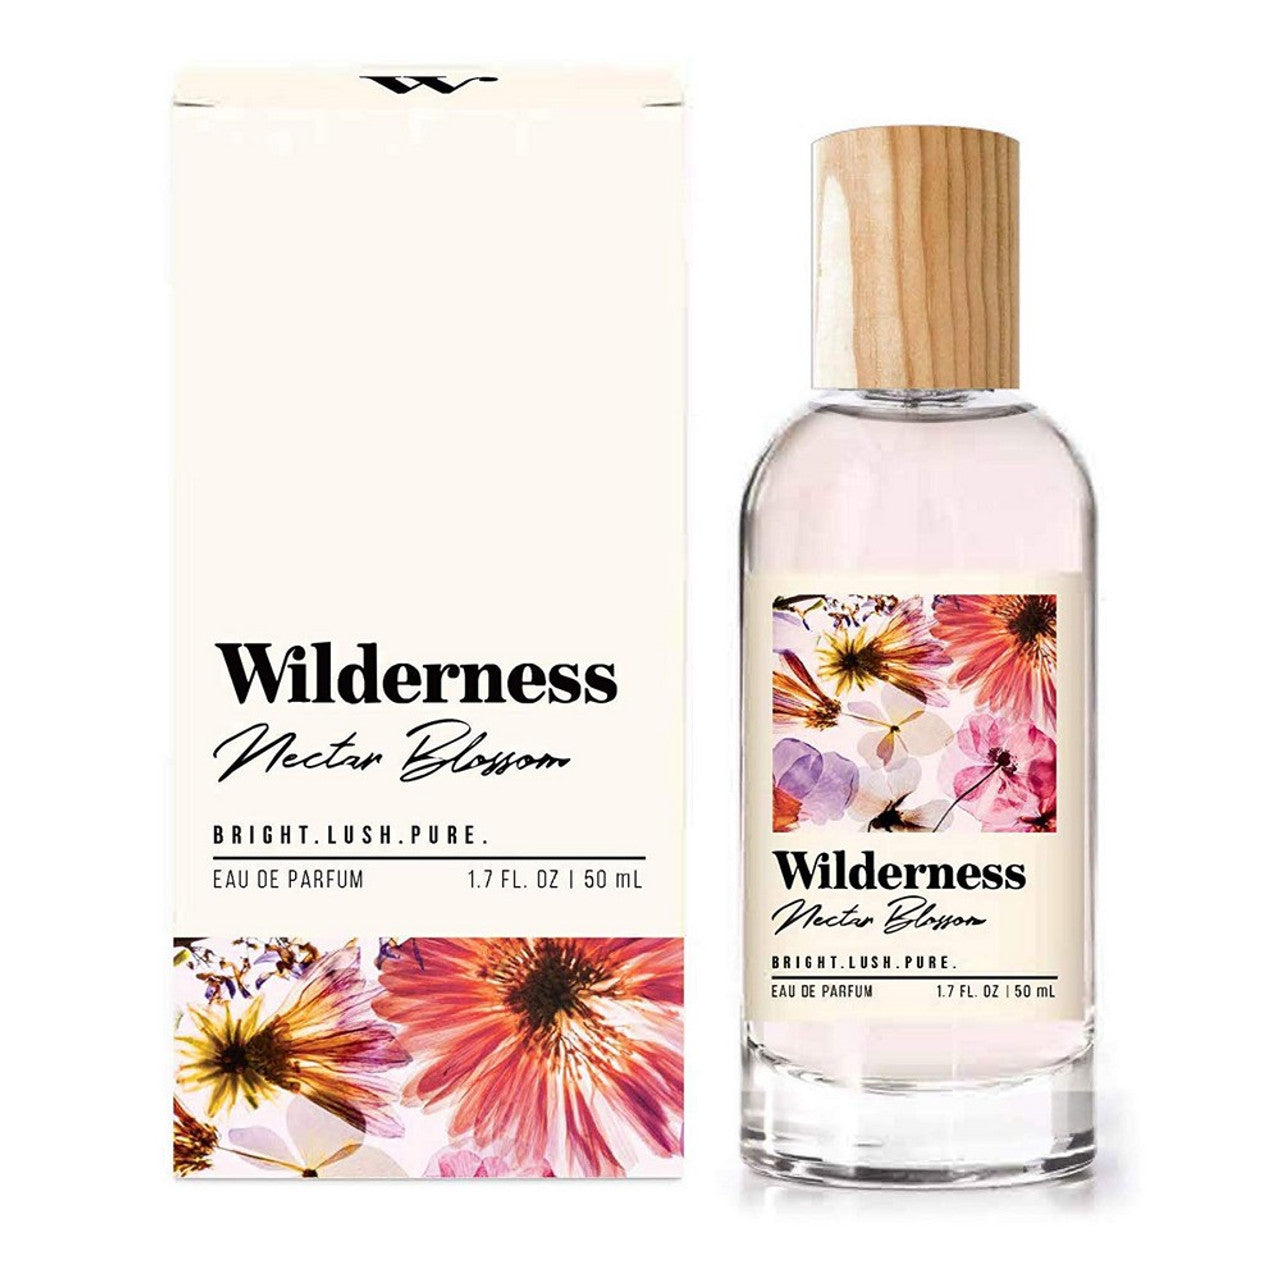 Tru Western Wms Wilderness Nectar Blossom Eau De Parfum 50ml